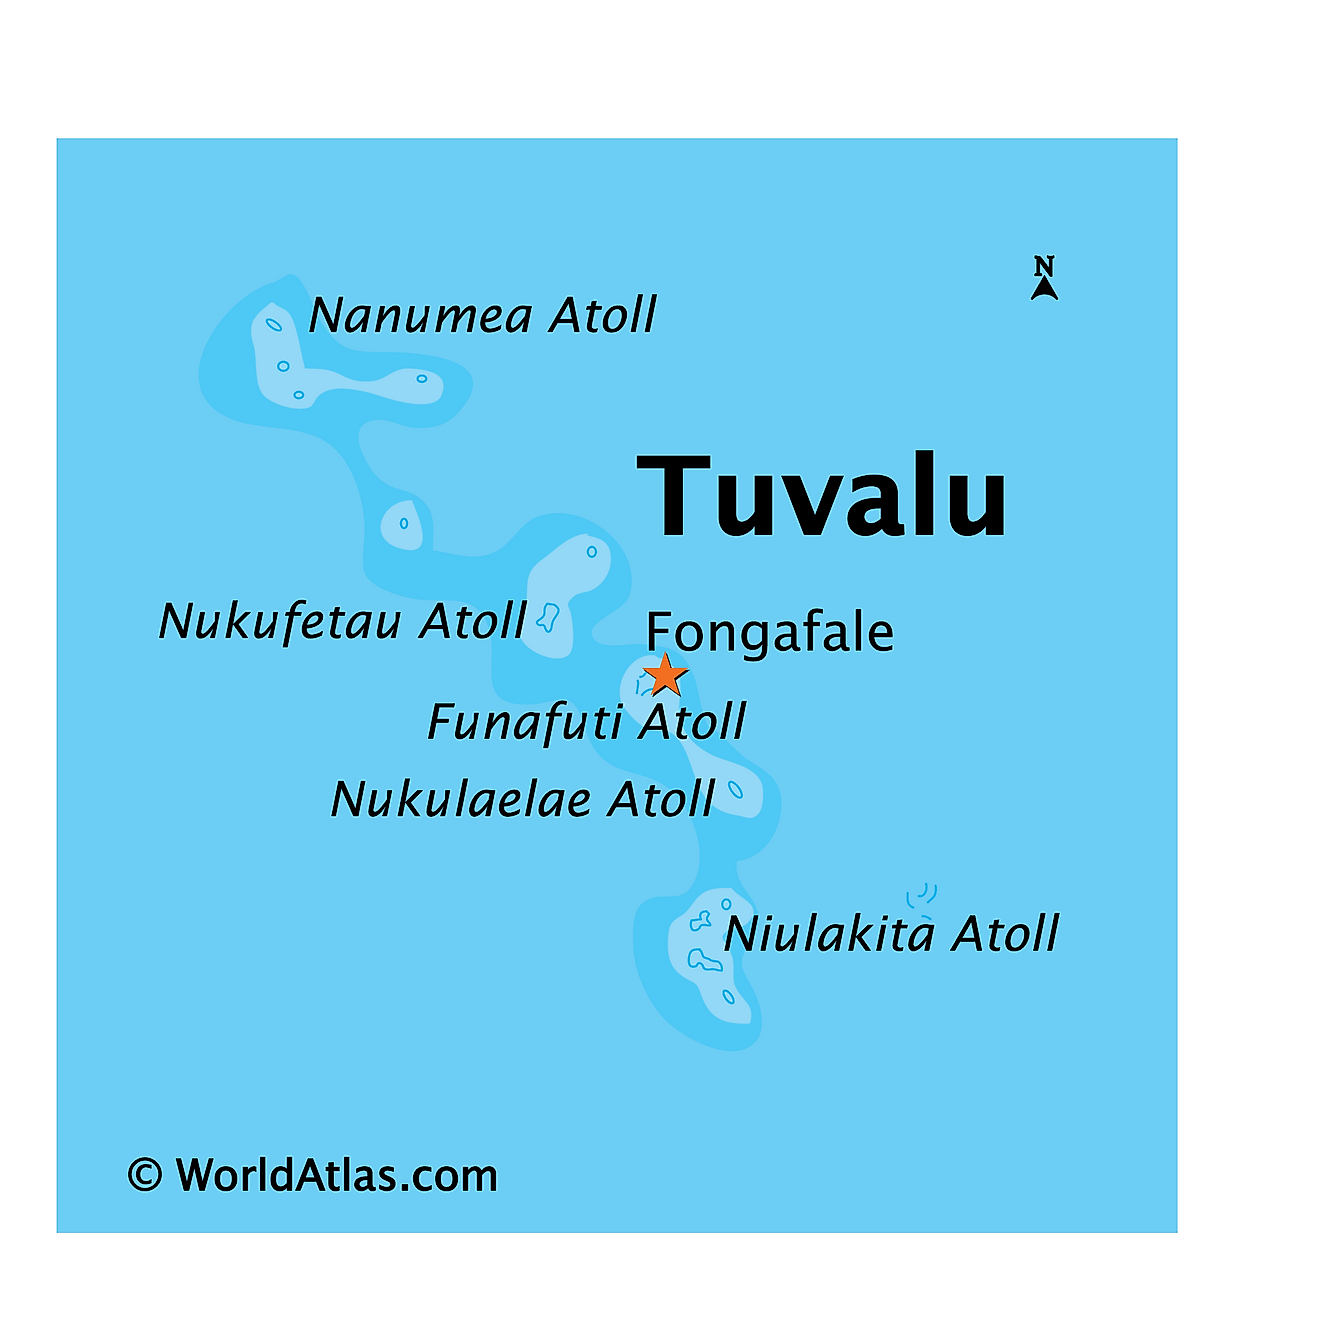 Mapa Físico de Tuvalu. Muestra las características físicas de Tuvalu, sus tres islas de arrecifes y seis verdaderos atolones de coral.